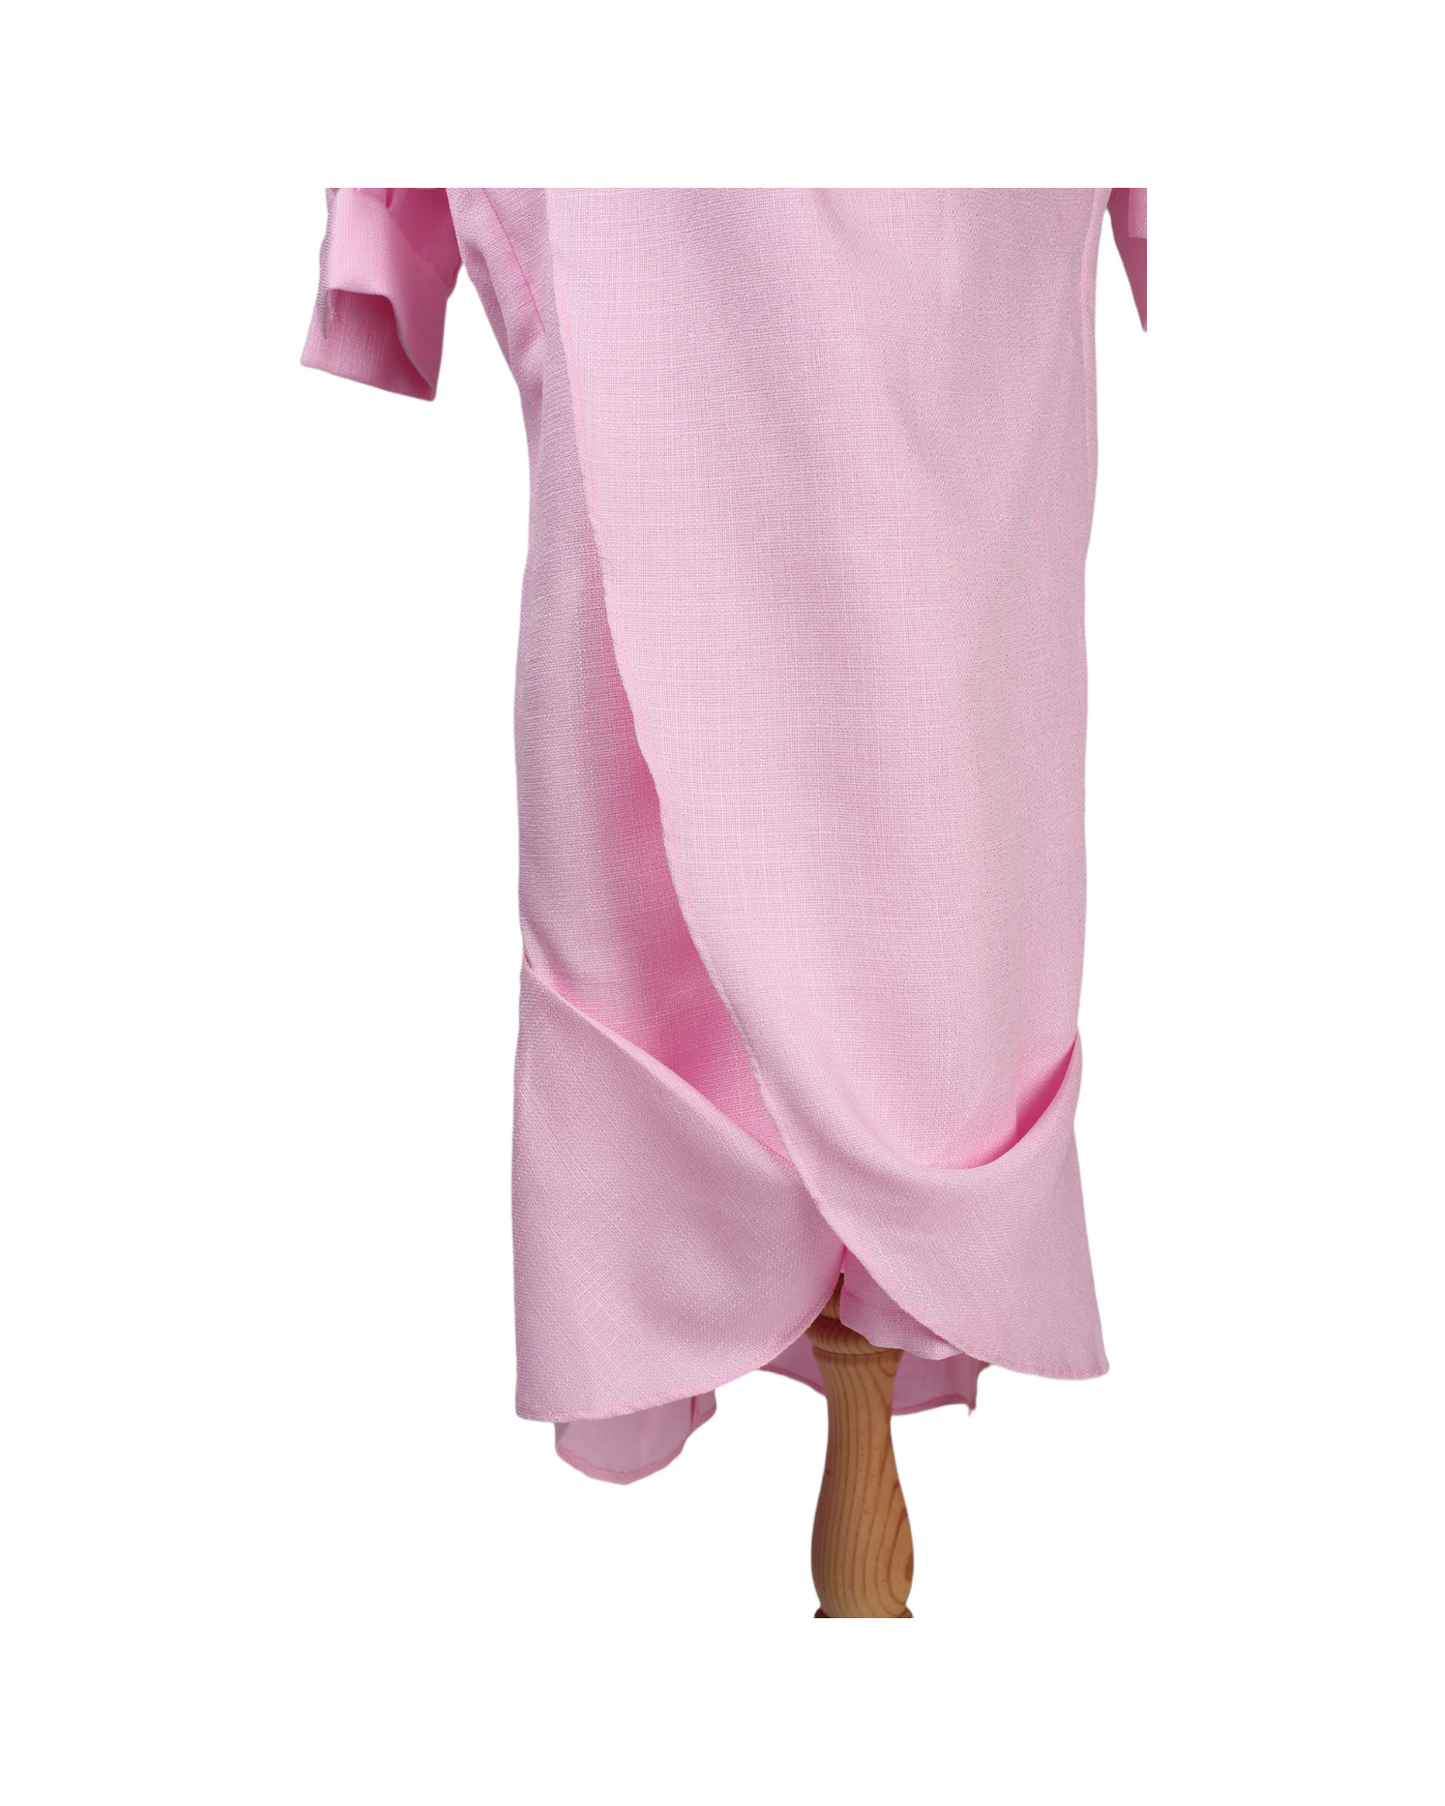 Maha Al Ahmed Maxi Pink Long Sleeve Kaftan